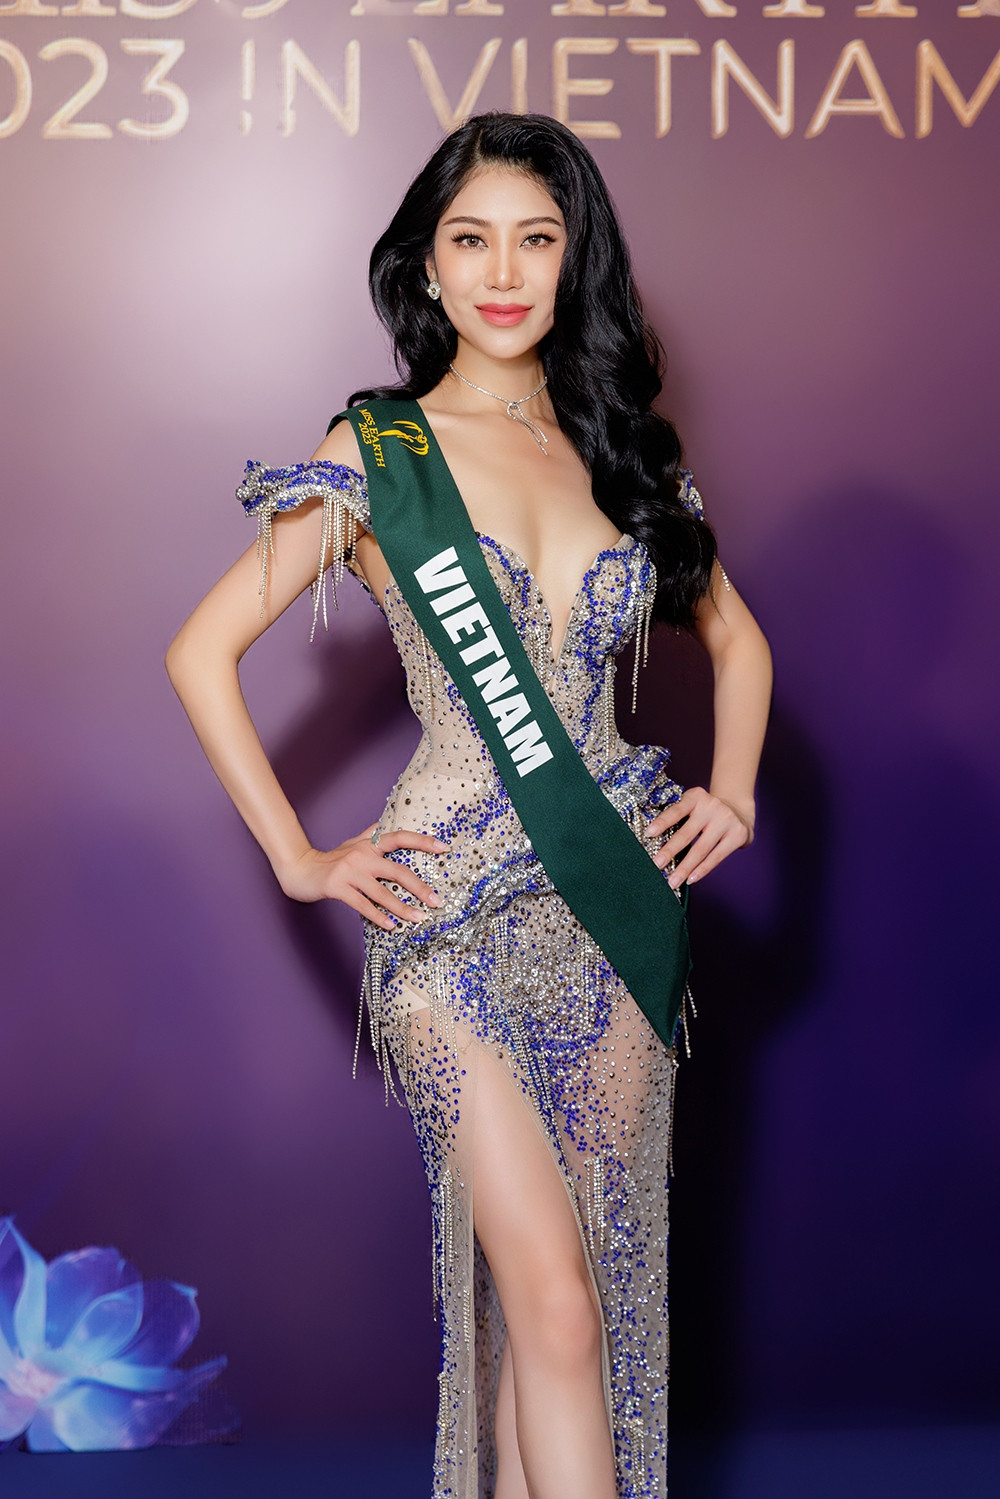 Hoa hậu Lan Anh đại diện Việt Nam, tại sự kiện cô tự tin giao tiếp và trả lời phỏng vấn bằng tiếng Anh